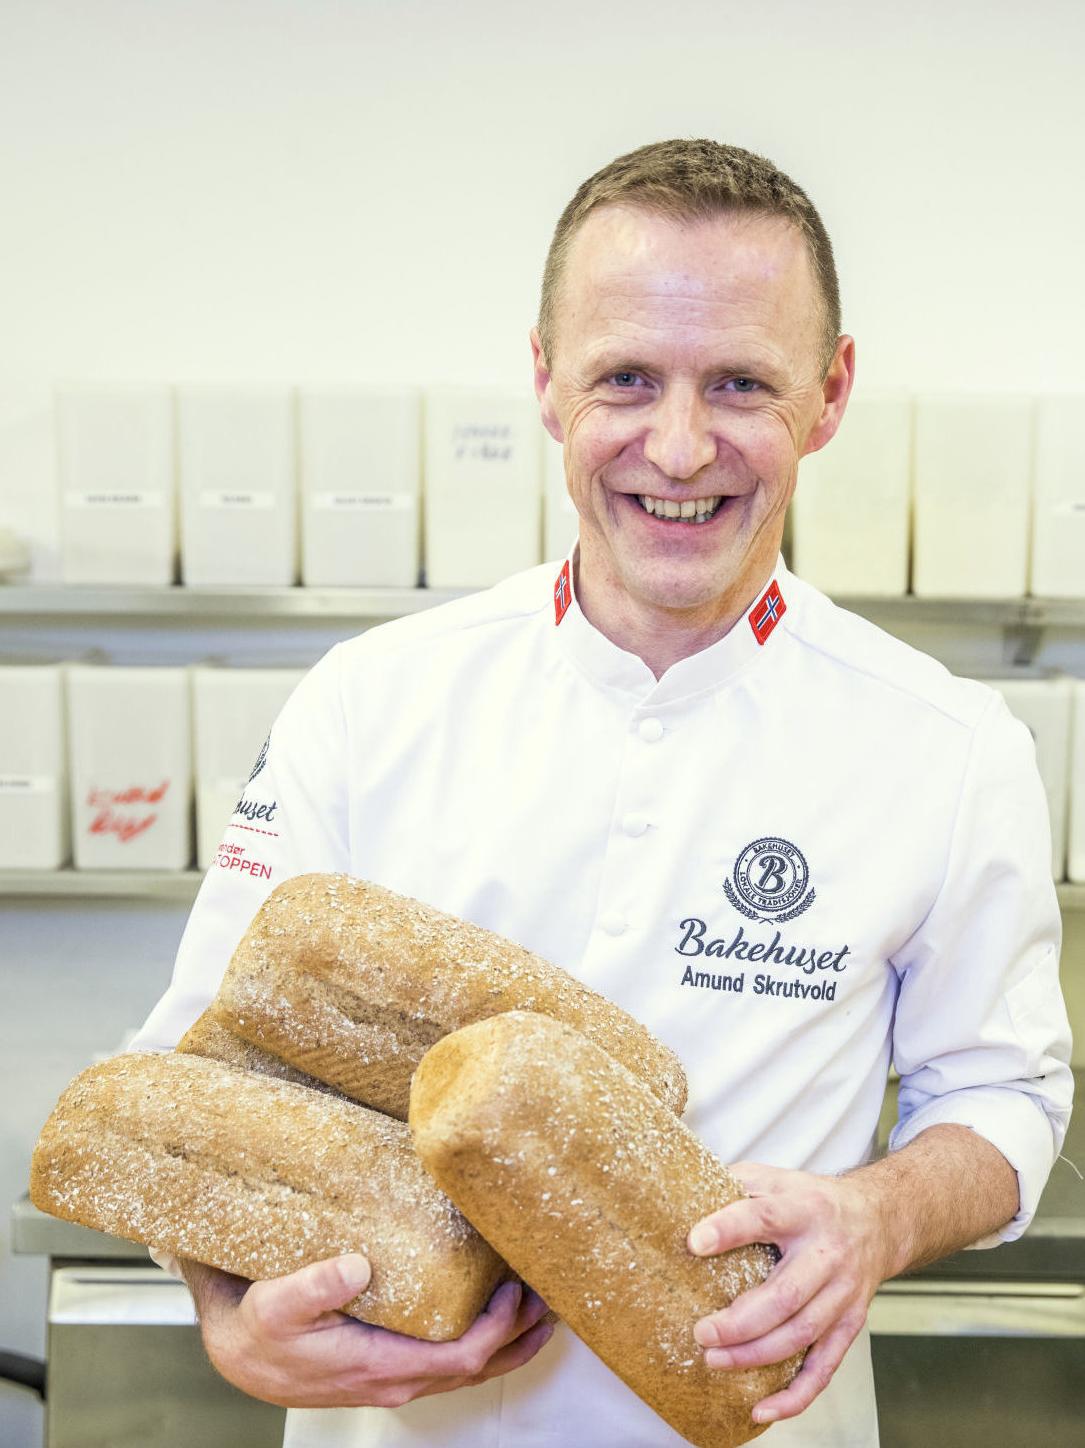 BAKERMESTER: Amund Skrutvold er produktutviklingssjef i Bakehuset, og var den norske OL-troppens brødbaker i 2018.